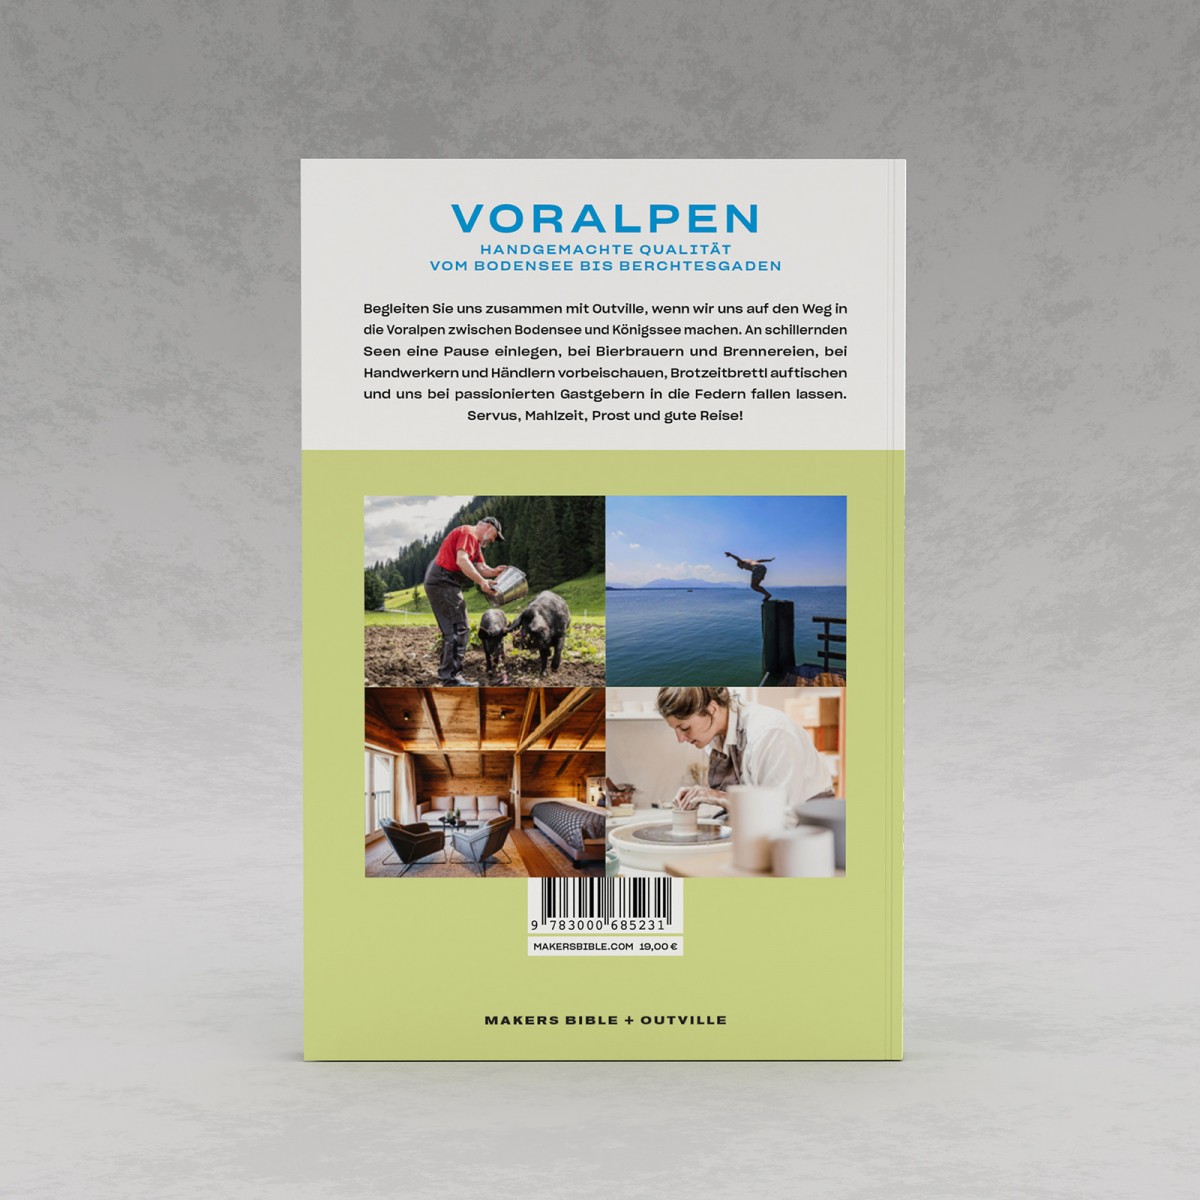 Makers Bible "Voralpen" – Handgemachte Qualität